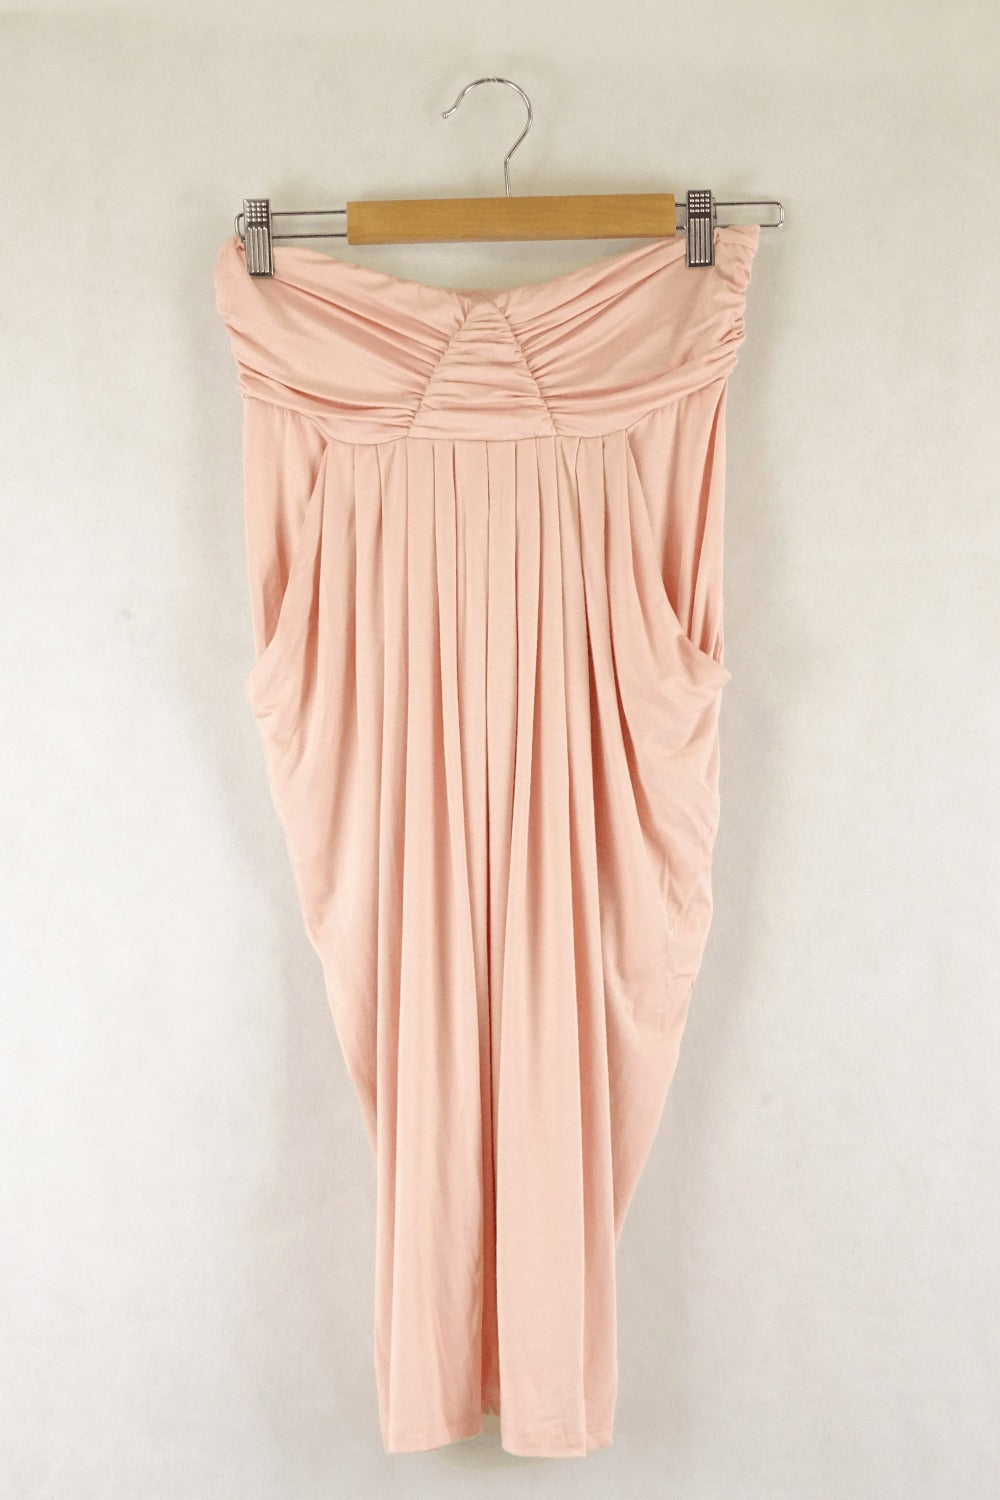 Shopbop Pink Dress L